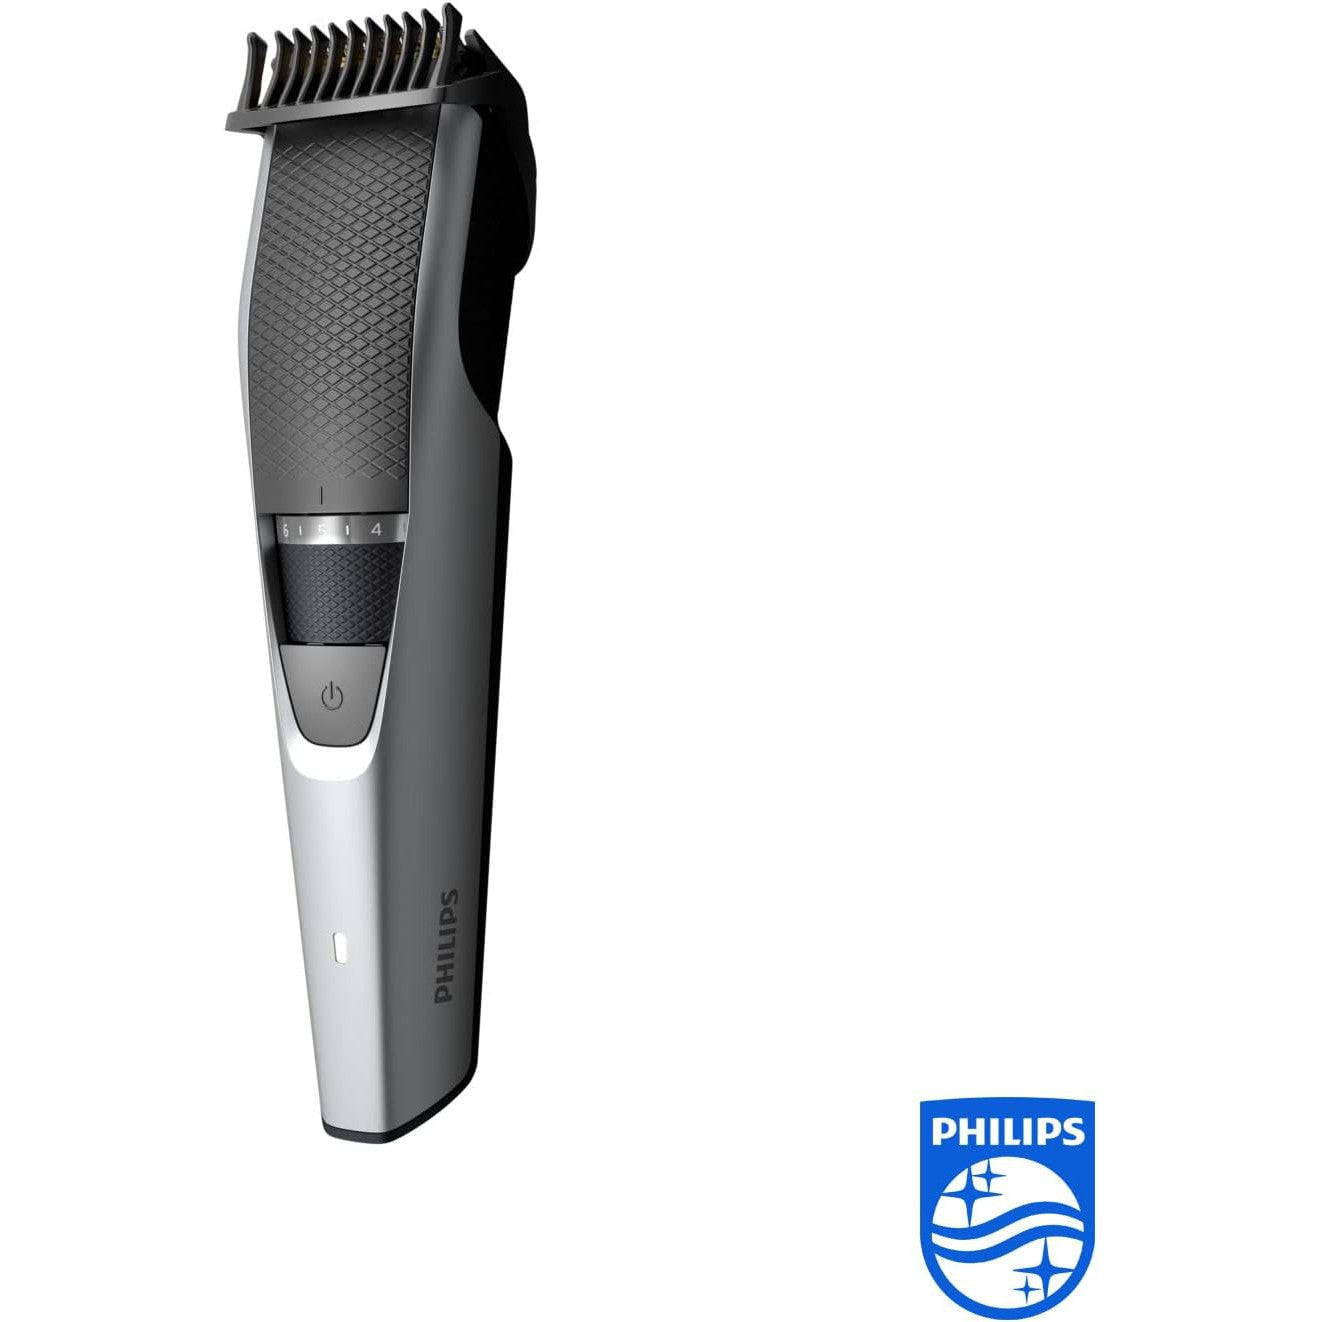 Philips Beard & Stubble Trimmer/Hair Clipper for Men BT3222/13, Series 3000, 20 Length Settings, 60 Min. Runtime